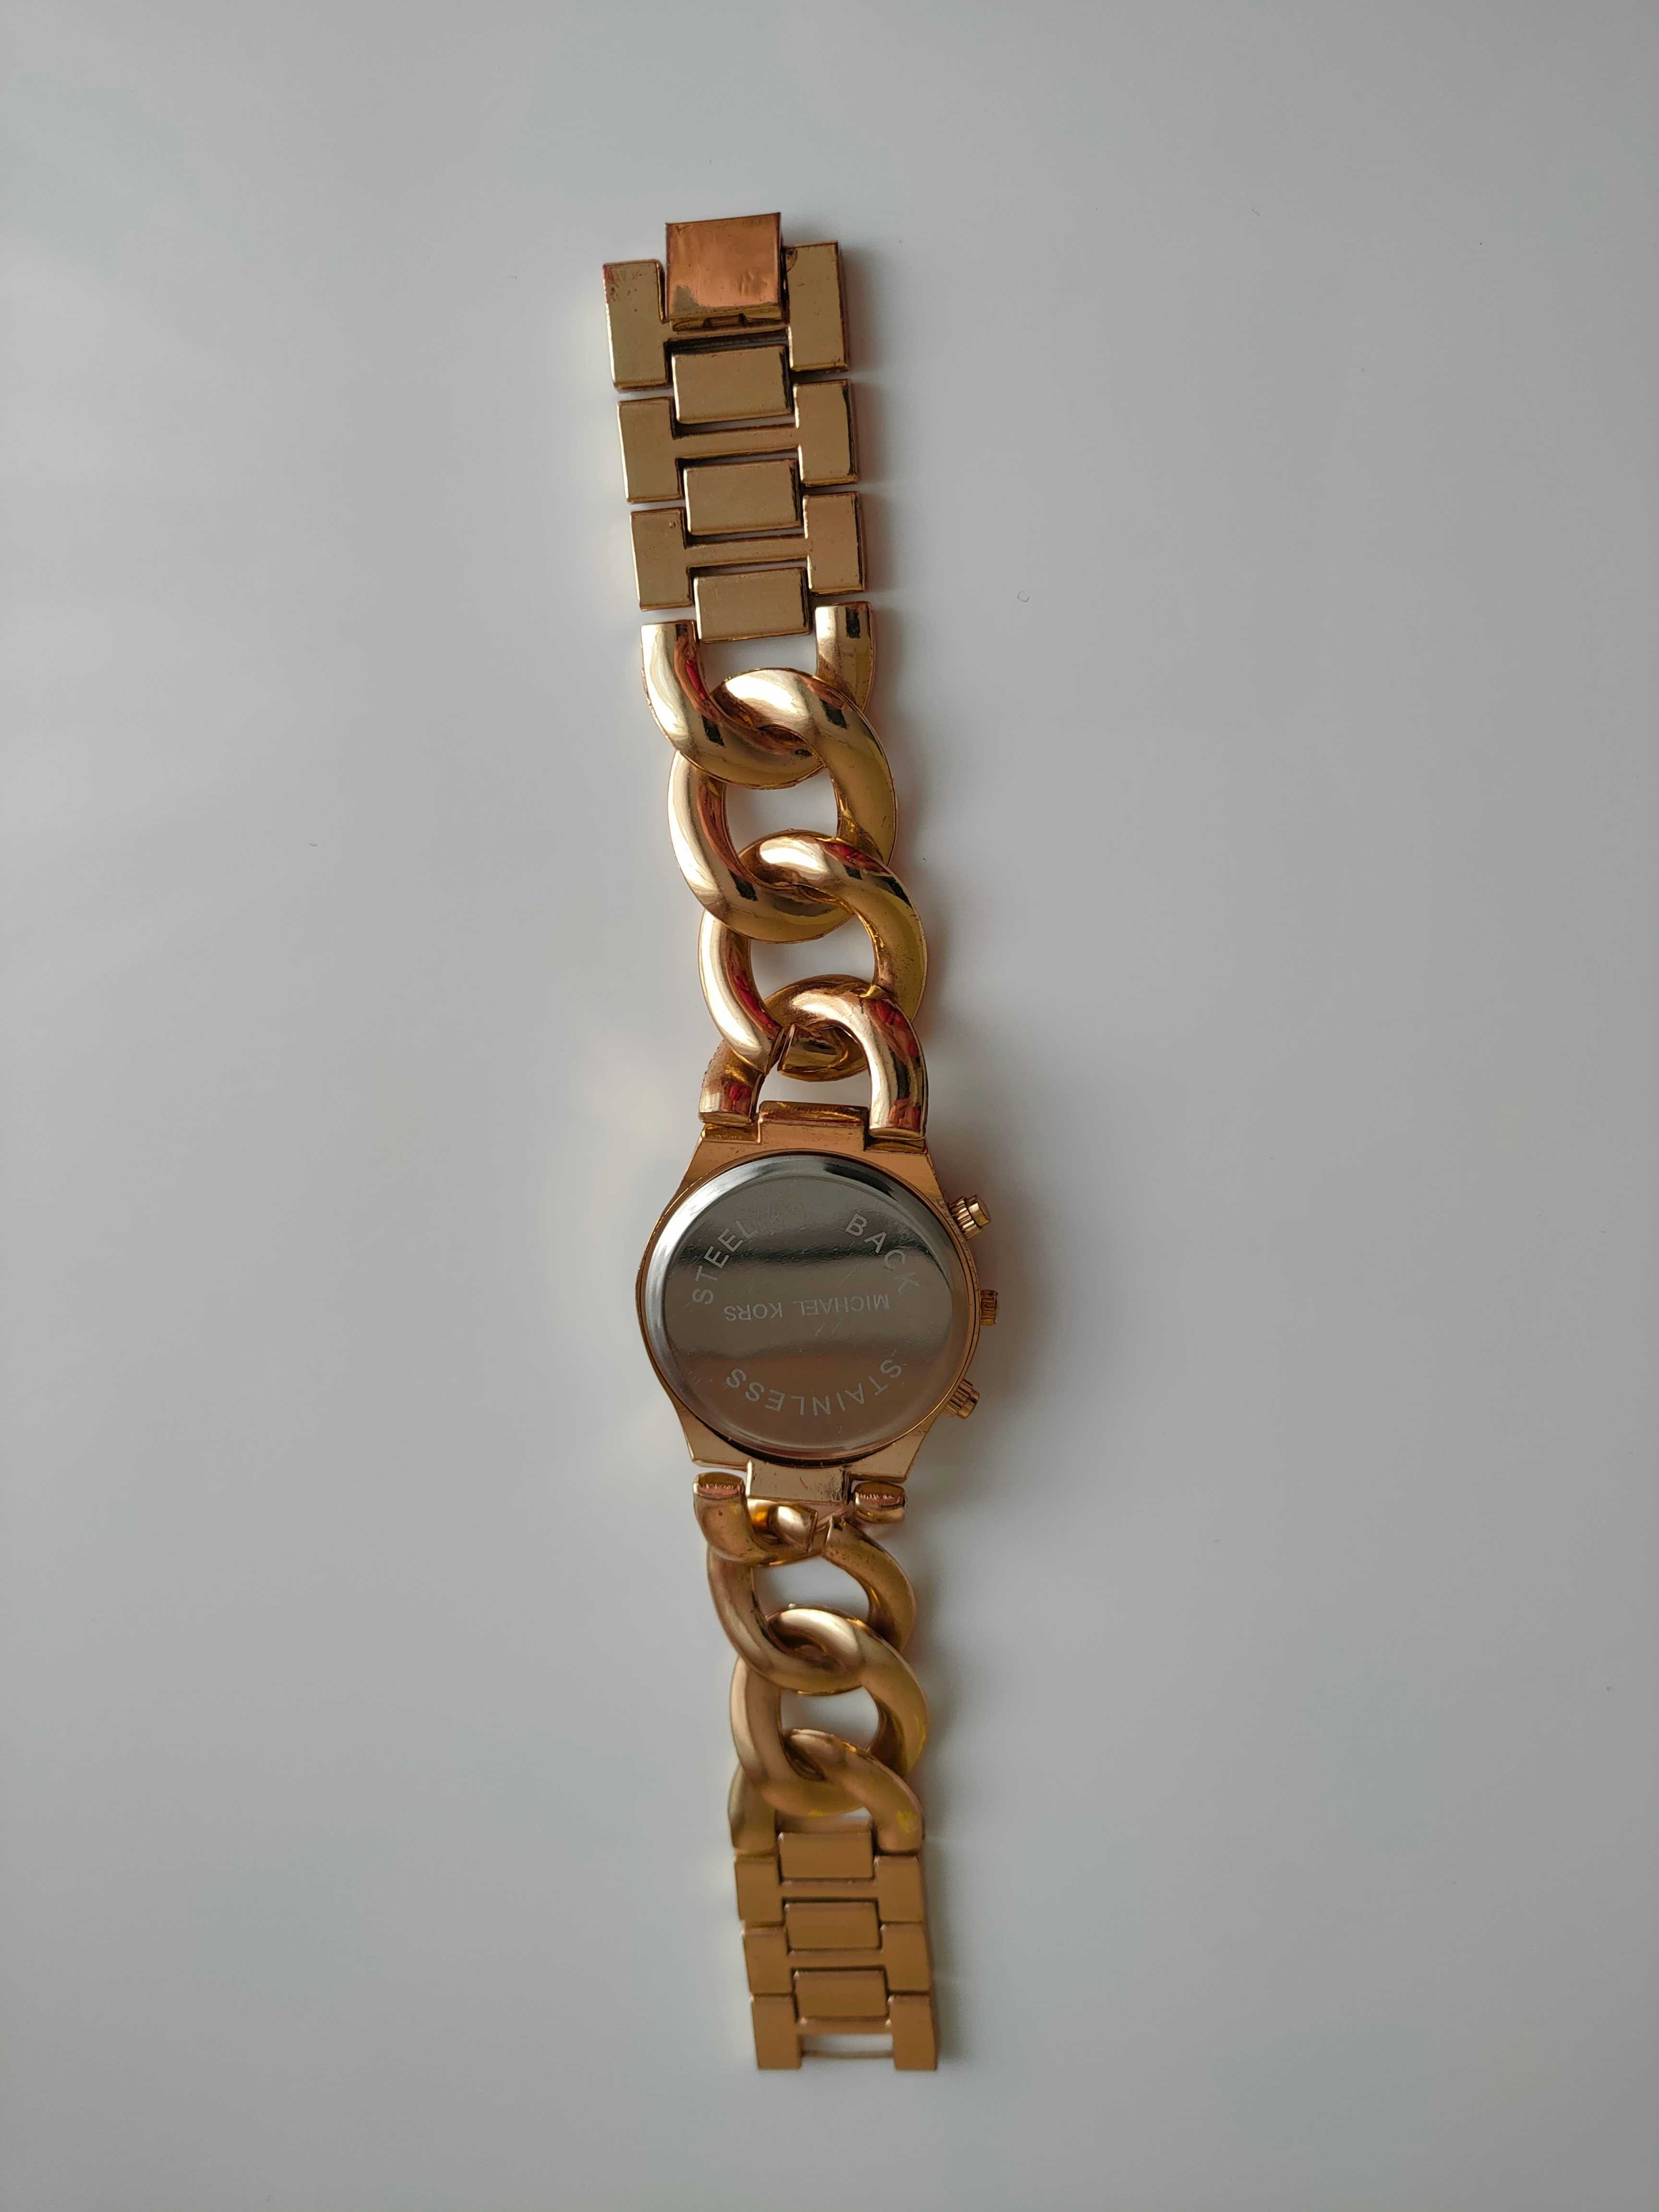 Стильные женские наручные часы Michael Kors с браслетом.цвет-золото.